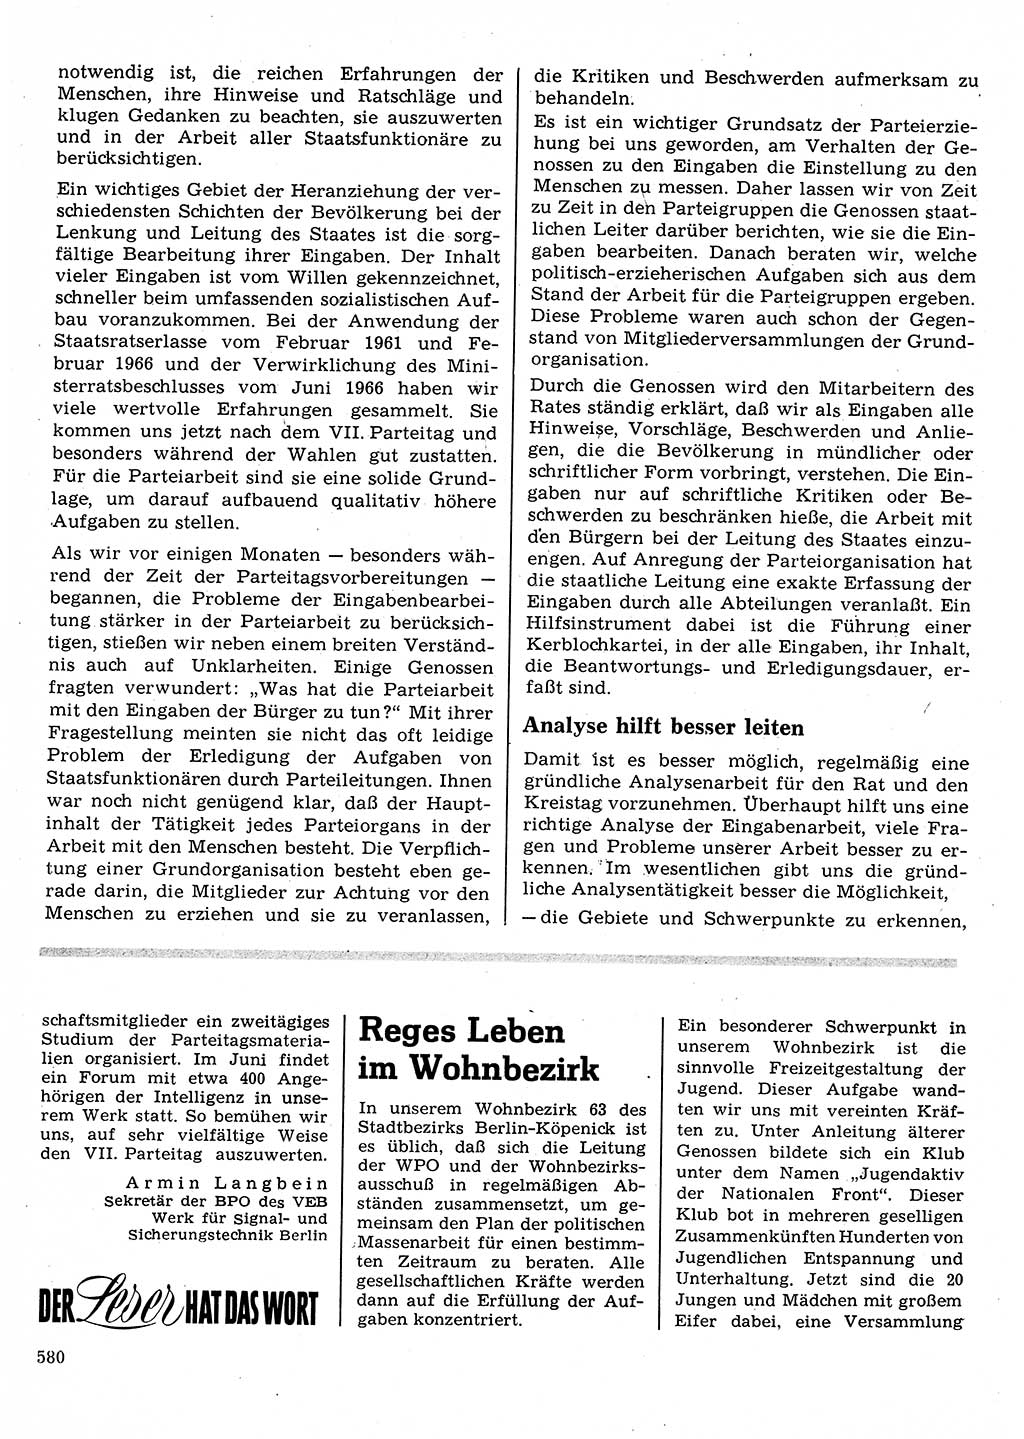 Neuer Weg (NW), Organ des Zentralkomitees (ZK) der SED (Sozialistische Einheitspartei Deutschlands) für Fragen des Parteilebens, 22. Jahrgang [Deutsche Demokratische Republik (DDR)] 1967, Seite 580 (NW ZK SED DDR 1967, S. 580)